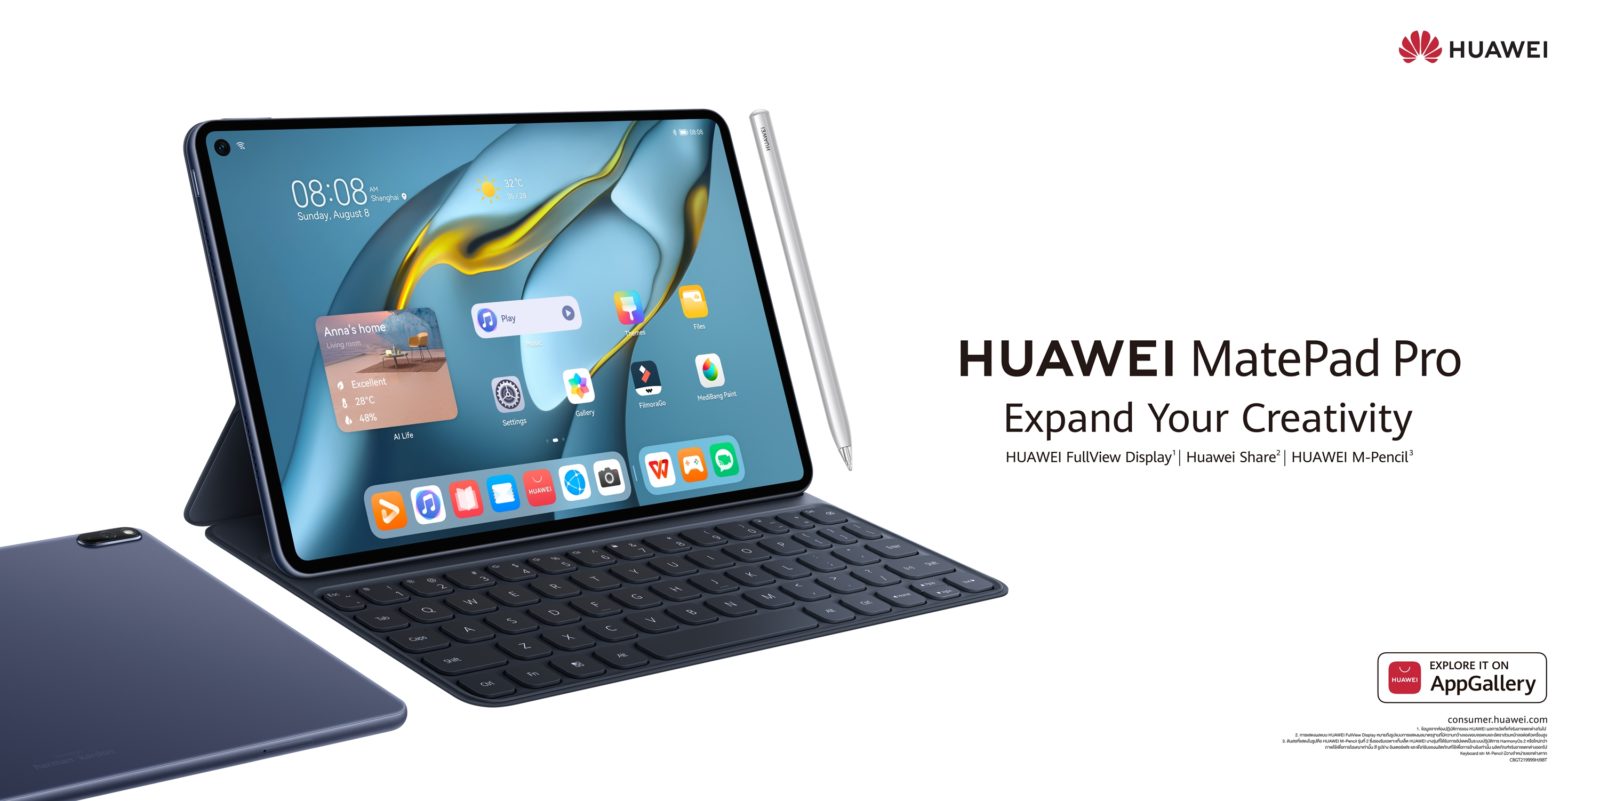 HUAWEI MatePad Pro 10.8 inch 1 | Huawei | สร้างสรรค์สนุก ปลุกจินตนาการด้วย HUAWEI MatePad Pro 10.8 นิ้ว ไอเทมเพื่องานอาร์ตสำหรับคนรุ่นใหม่